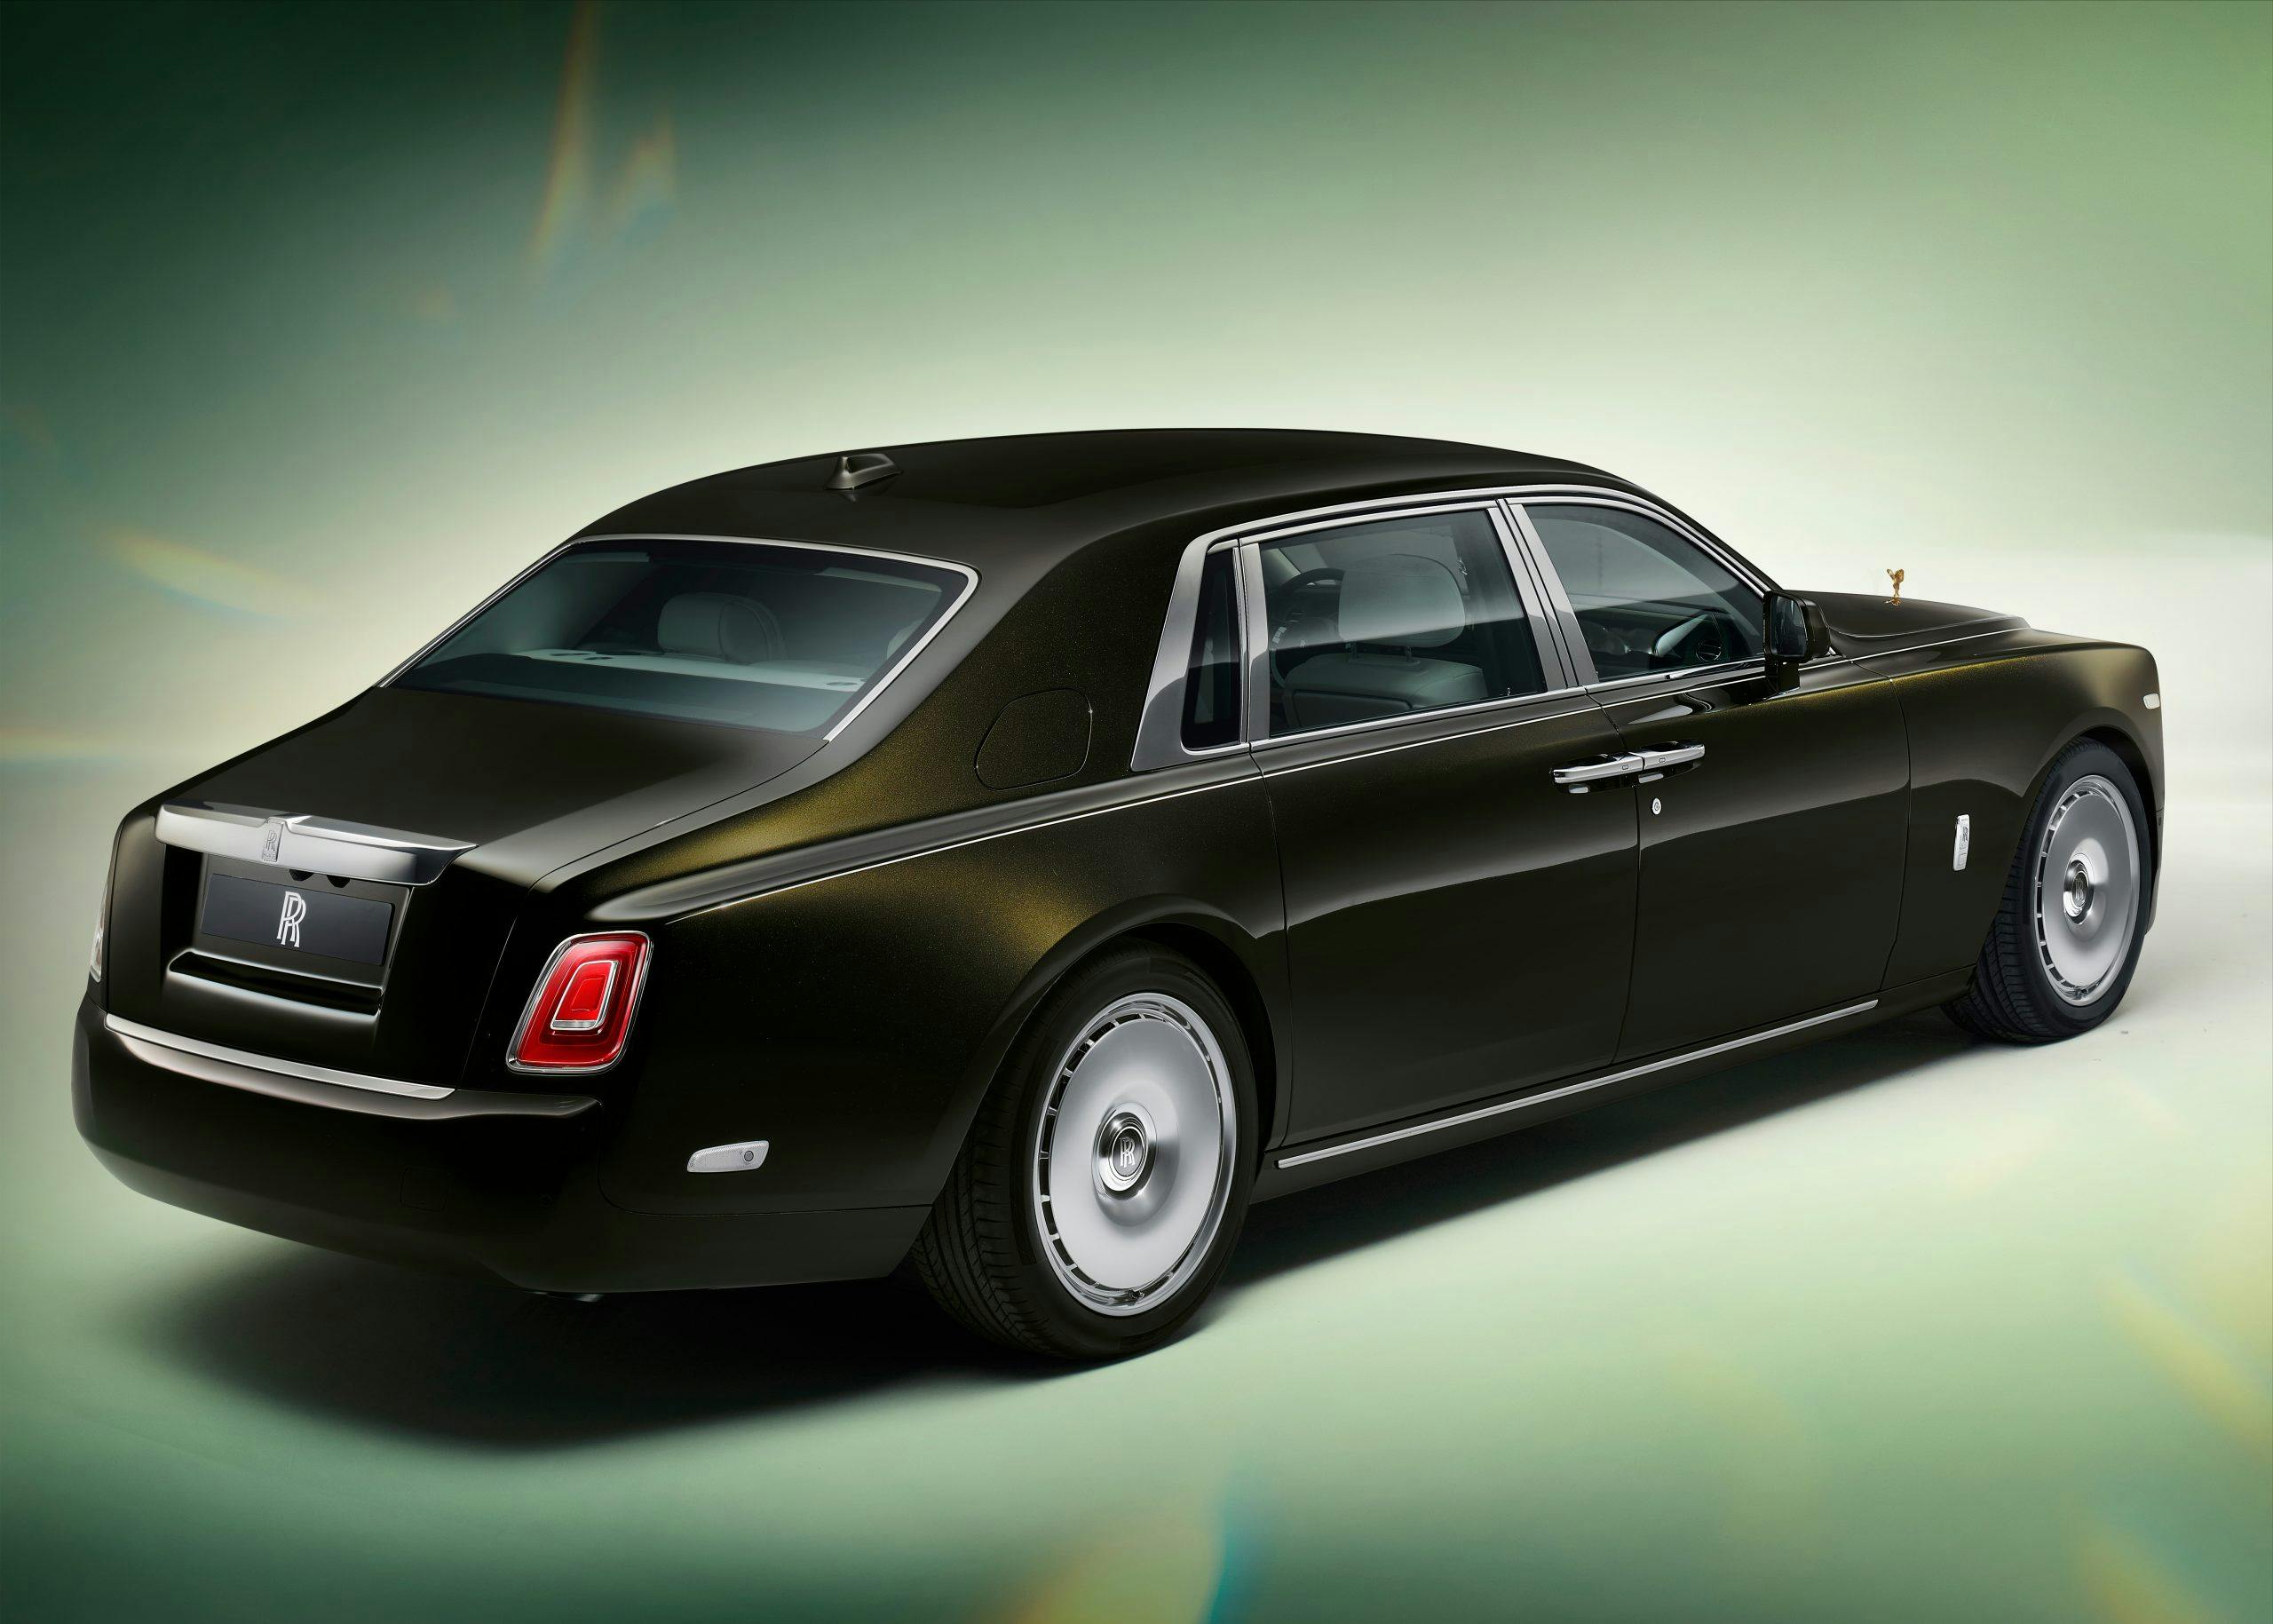 Rolls-Royce Phantom II rear